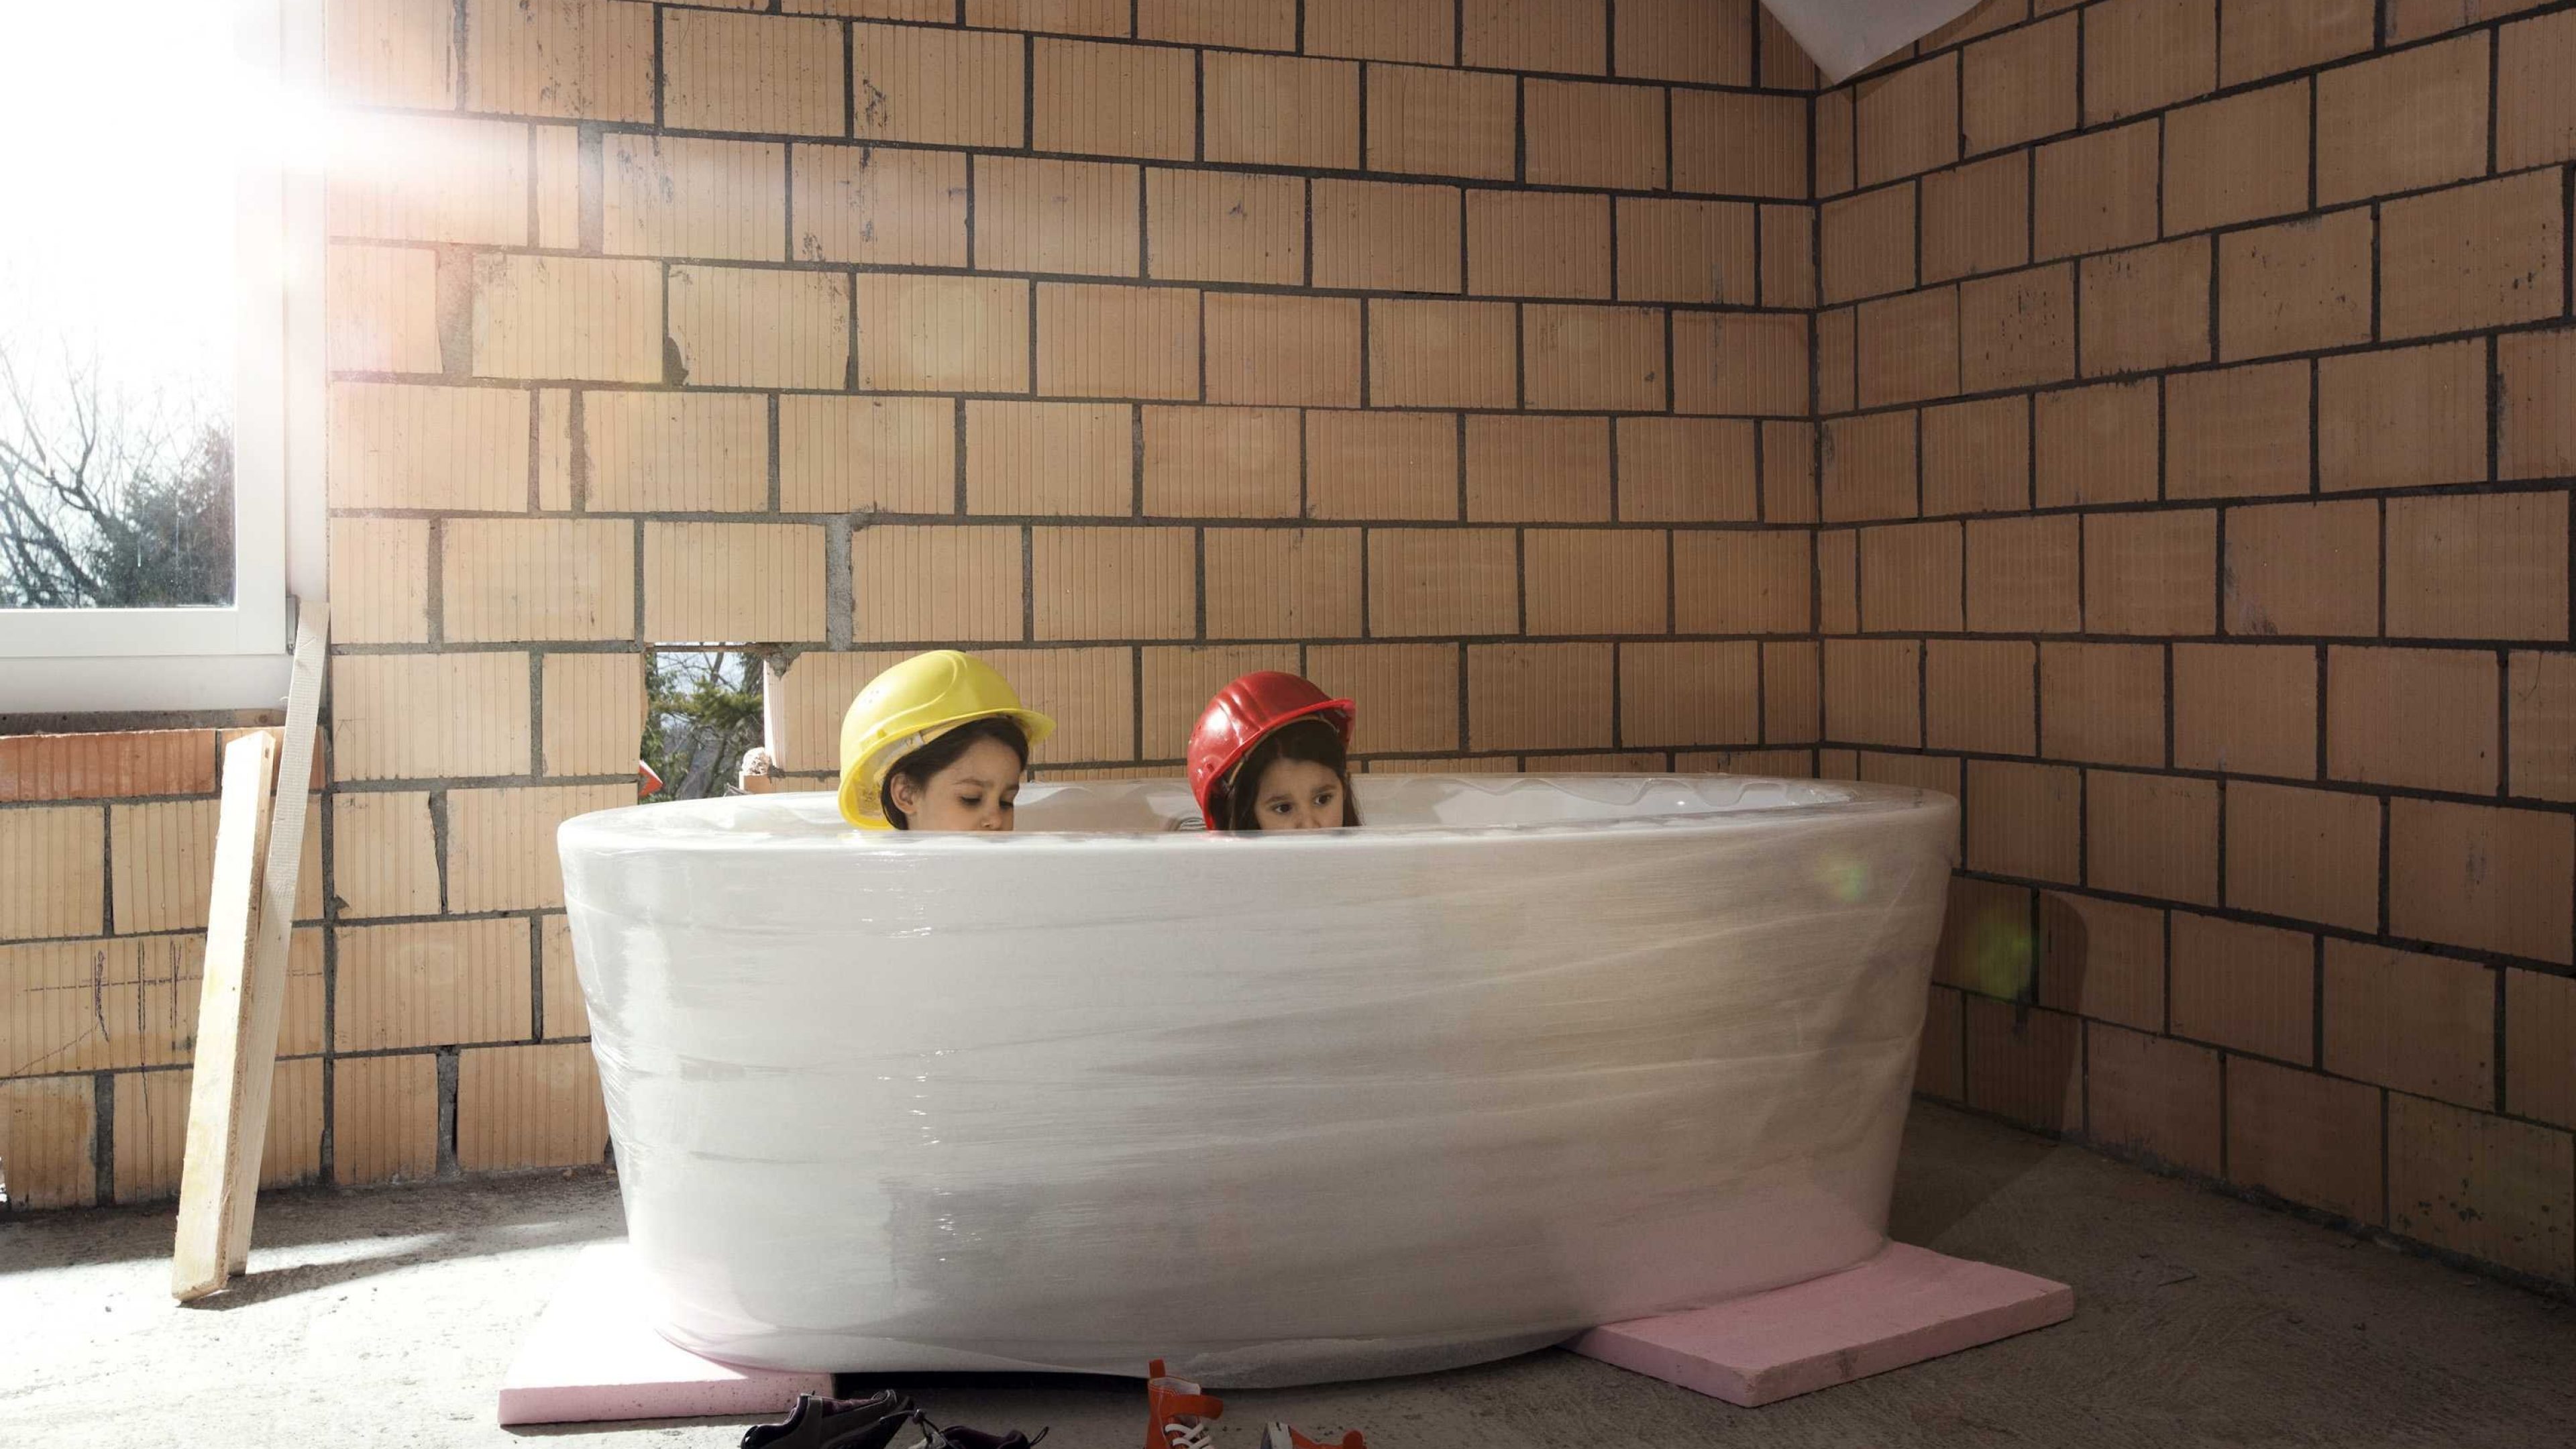 Kinder sitzen in Badewanne im Rohbau des Eigenheims